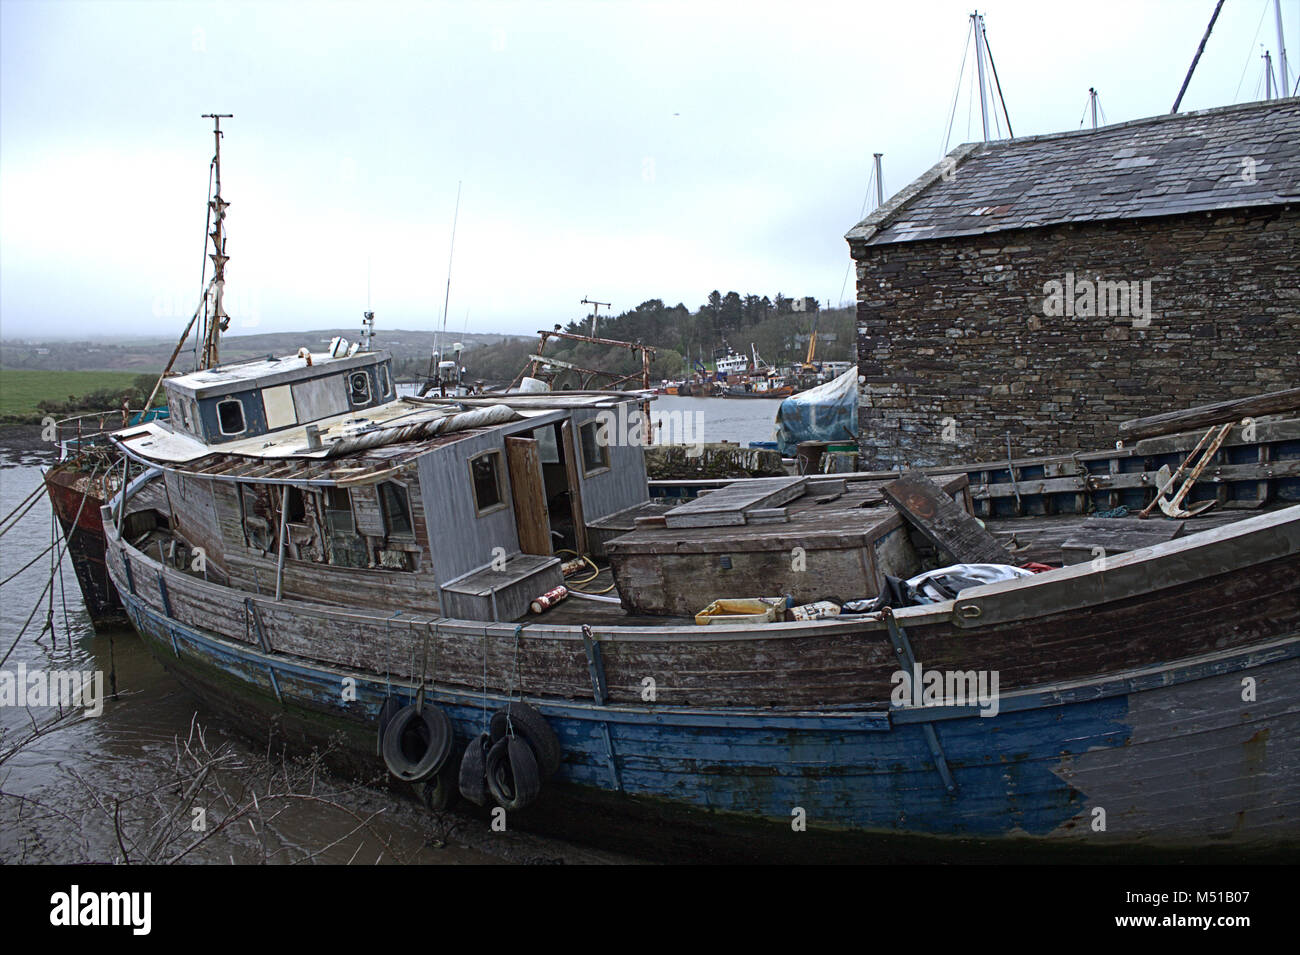 La scafo abbandonati di quella che una volta era una bella barca di legno è caduta lentamente a parte in un piccolo cantiere navale. Foto Stock